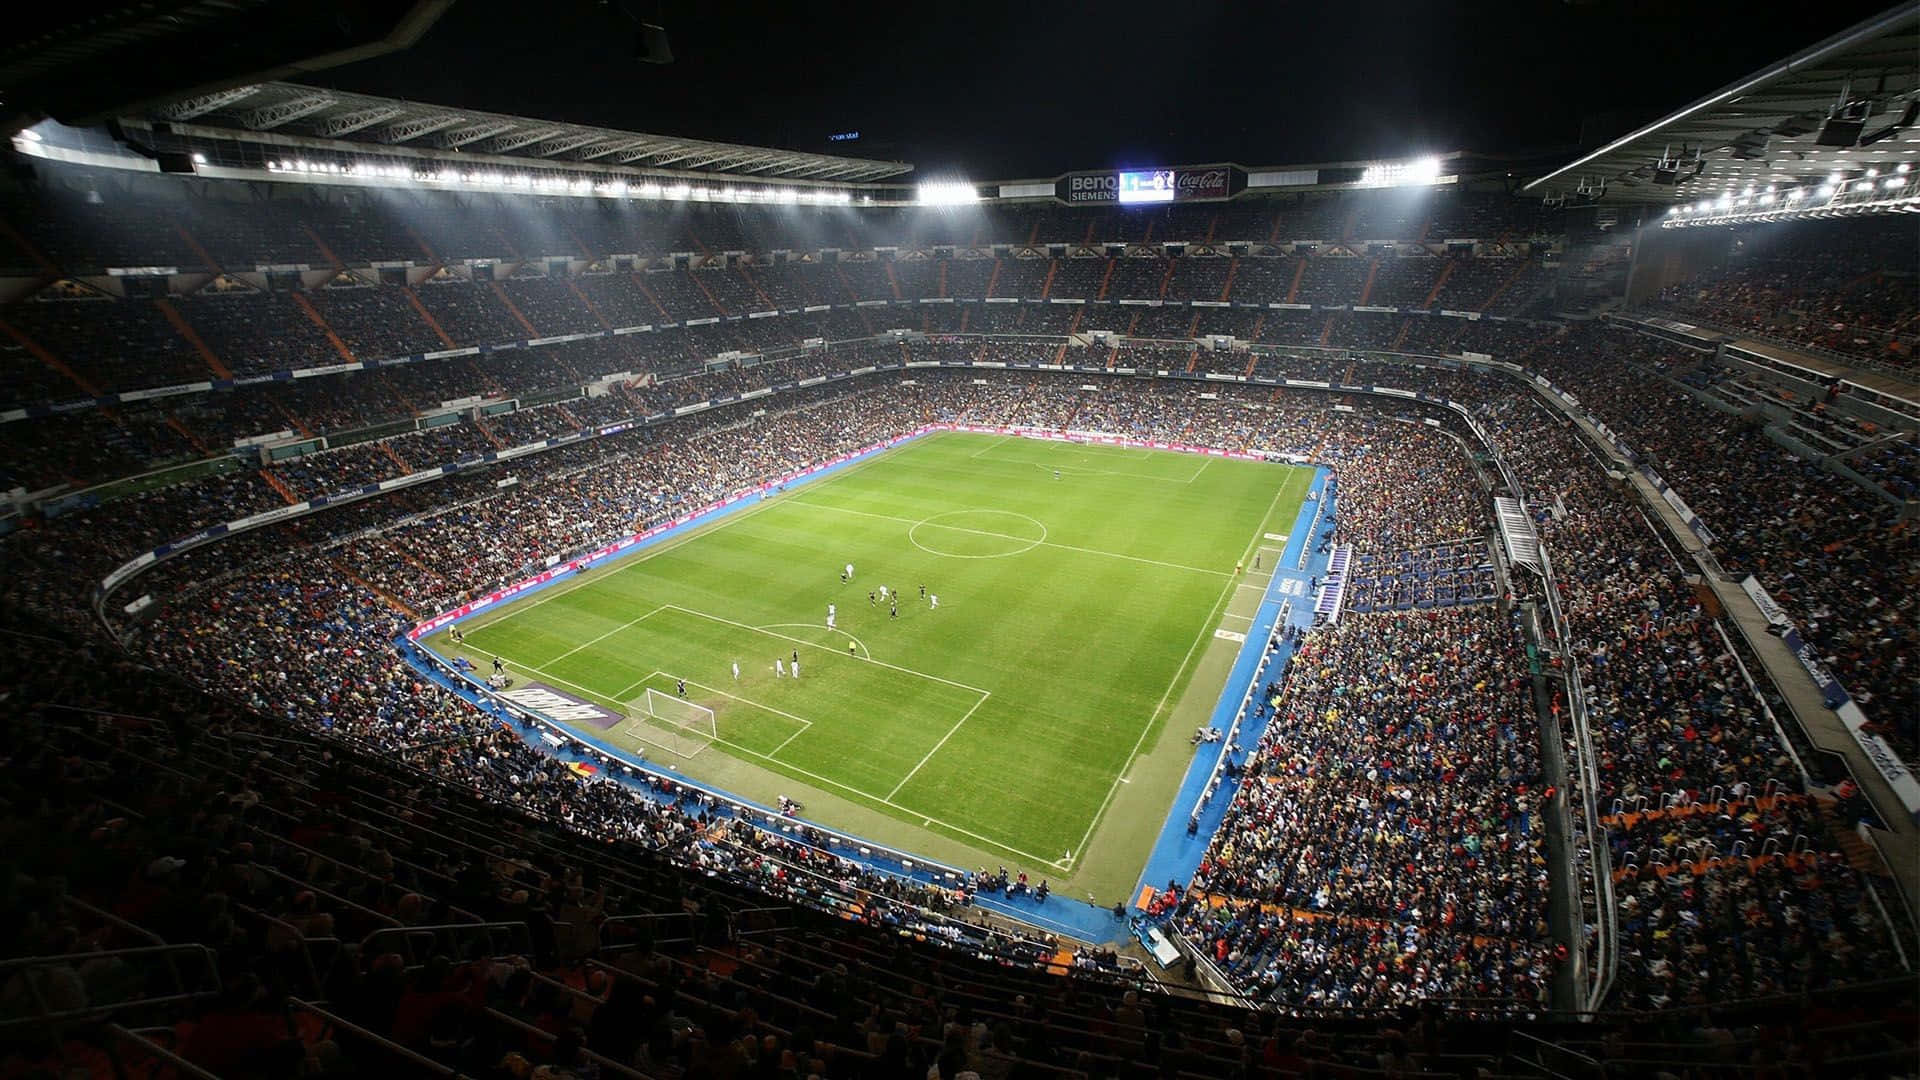 Imagende Un Gran Y Vibrante Estadio De Fútbol En Día De Partido. Fondo de pantalla